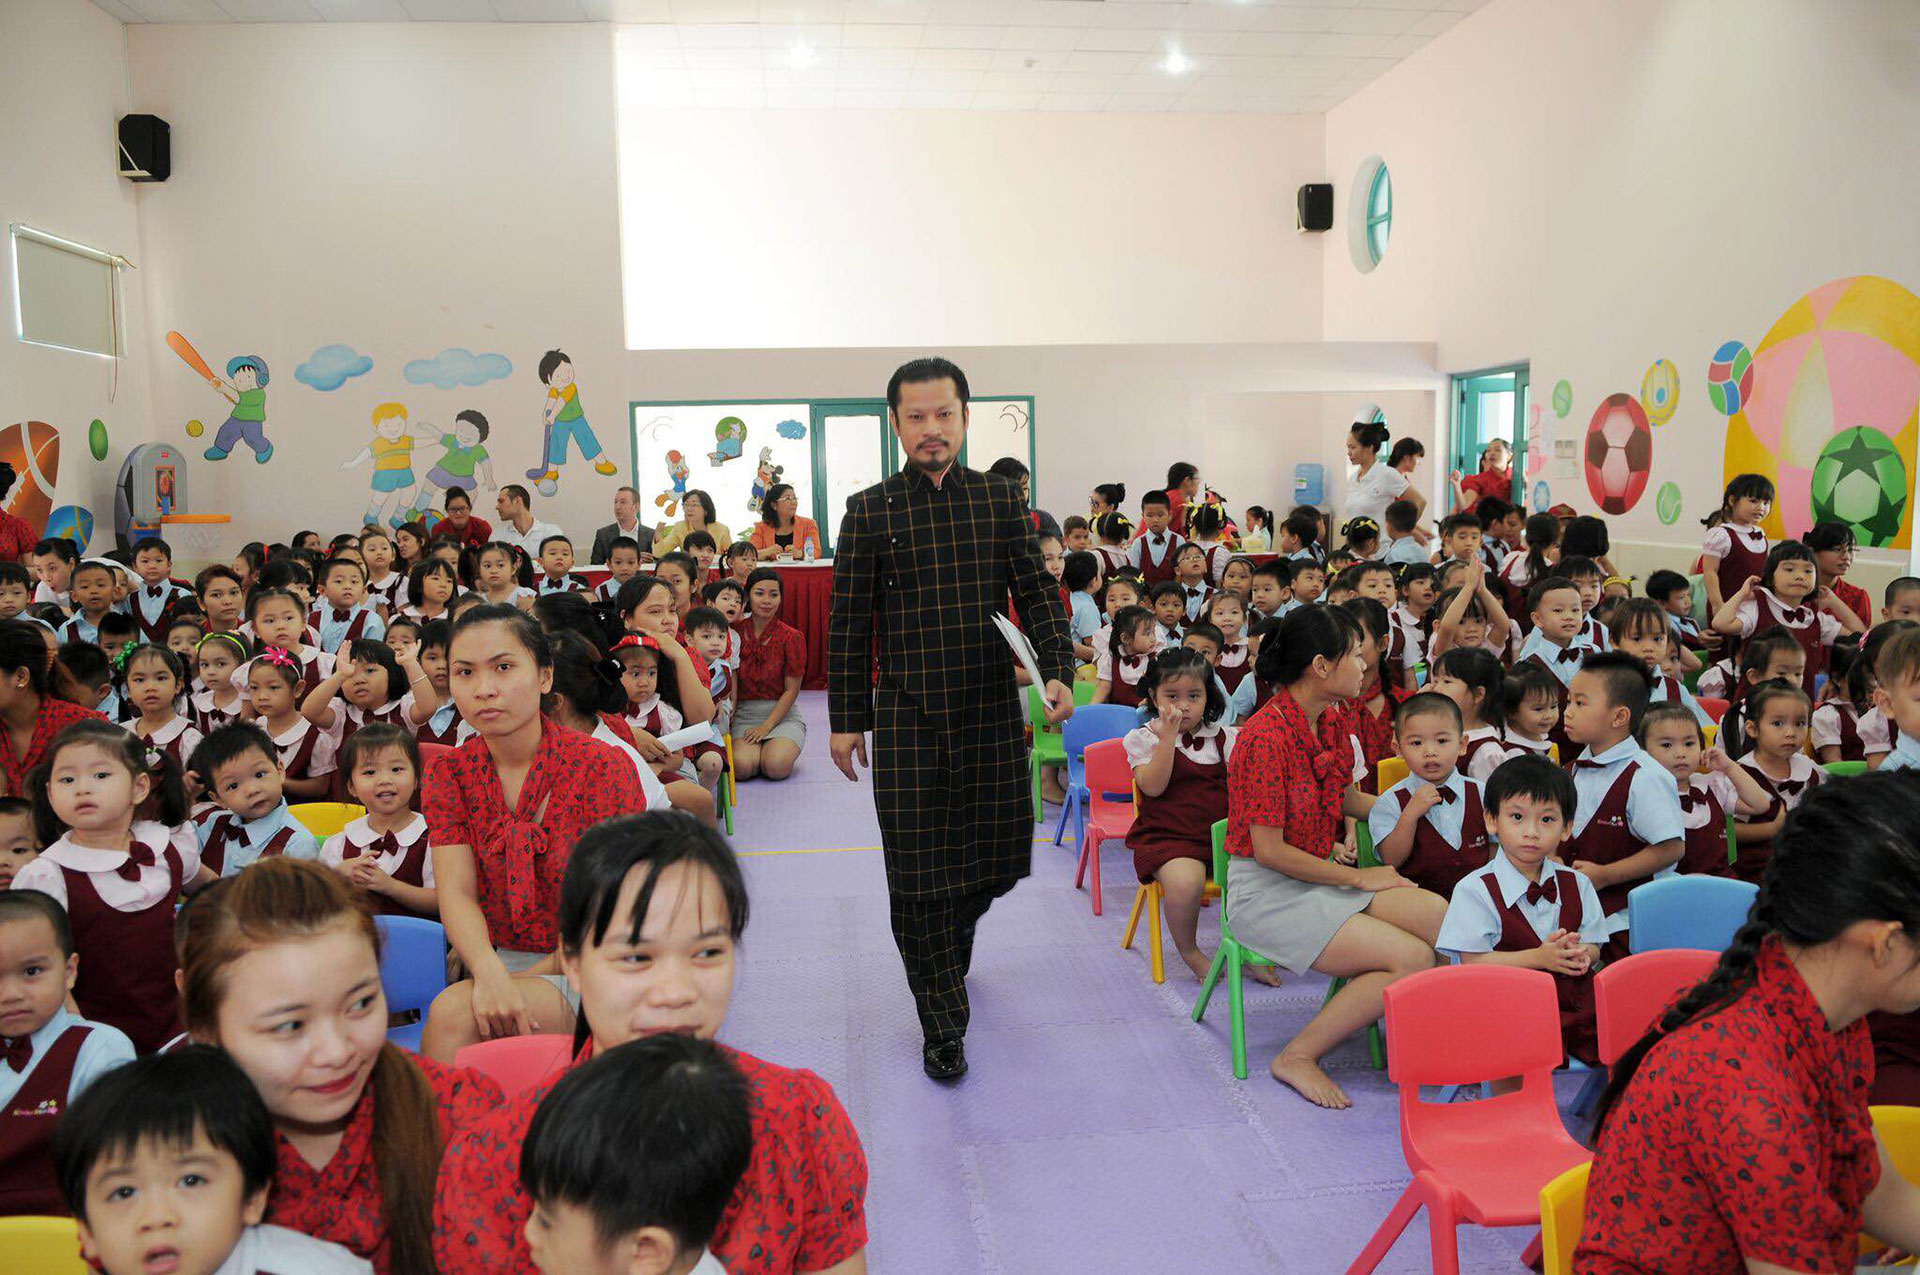 Bài phát biểu của Hùng Cửu Long nhân ngày 20/11 tại trường con gái